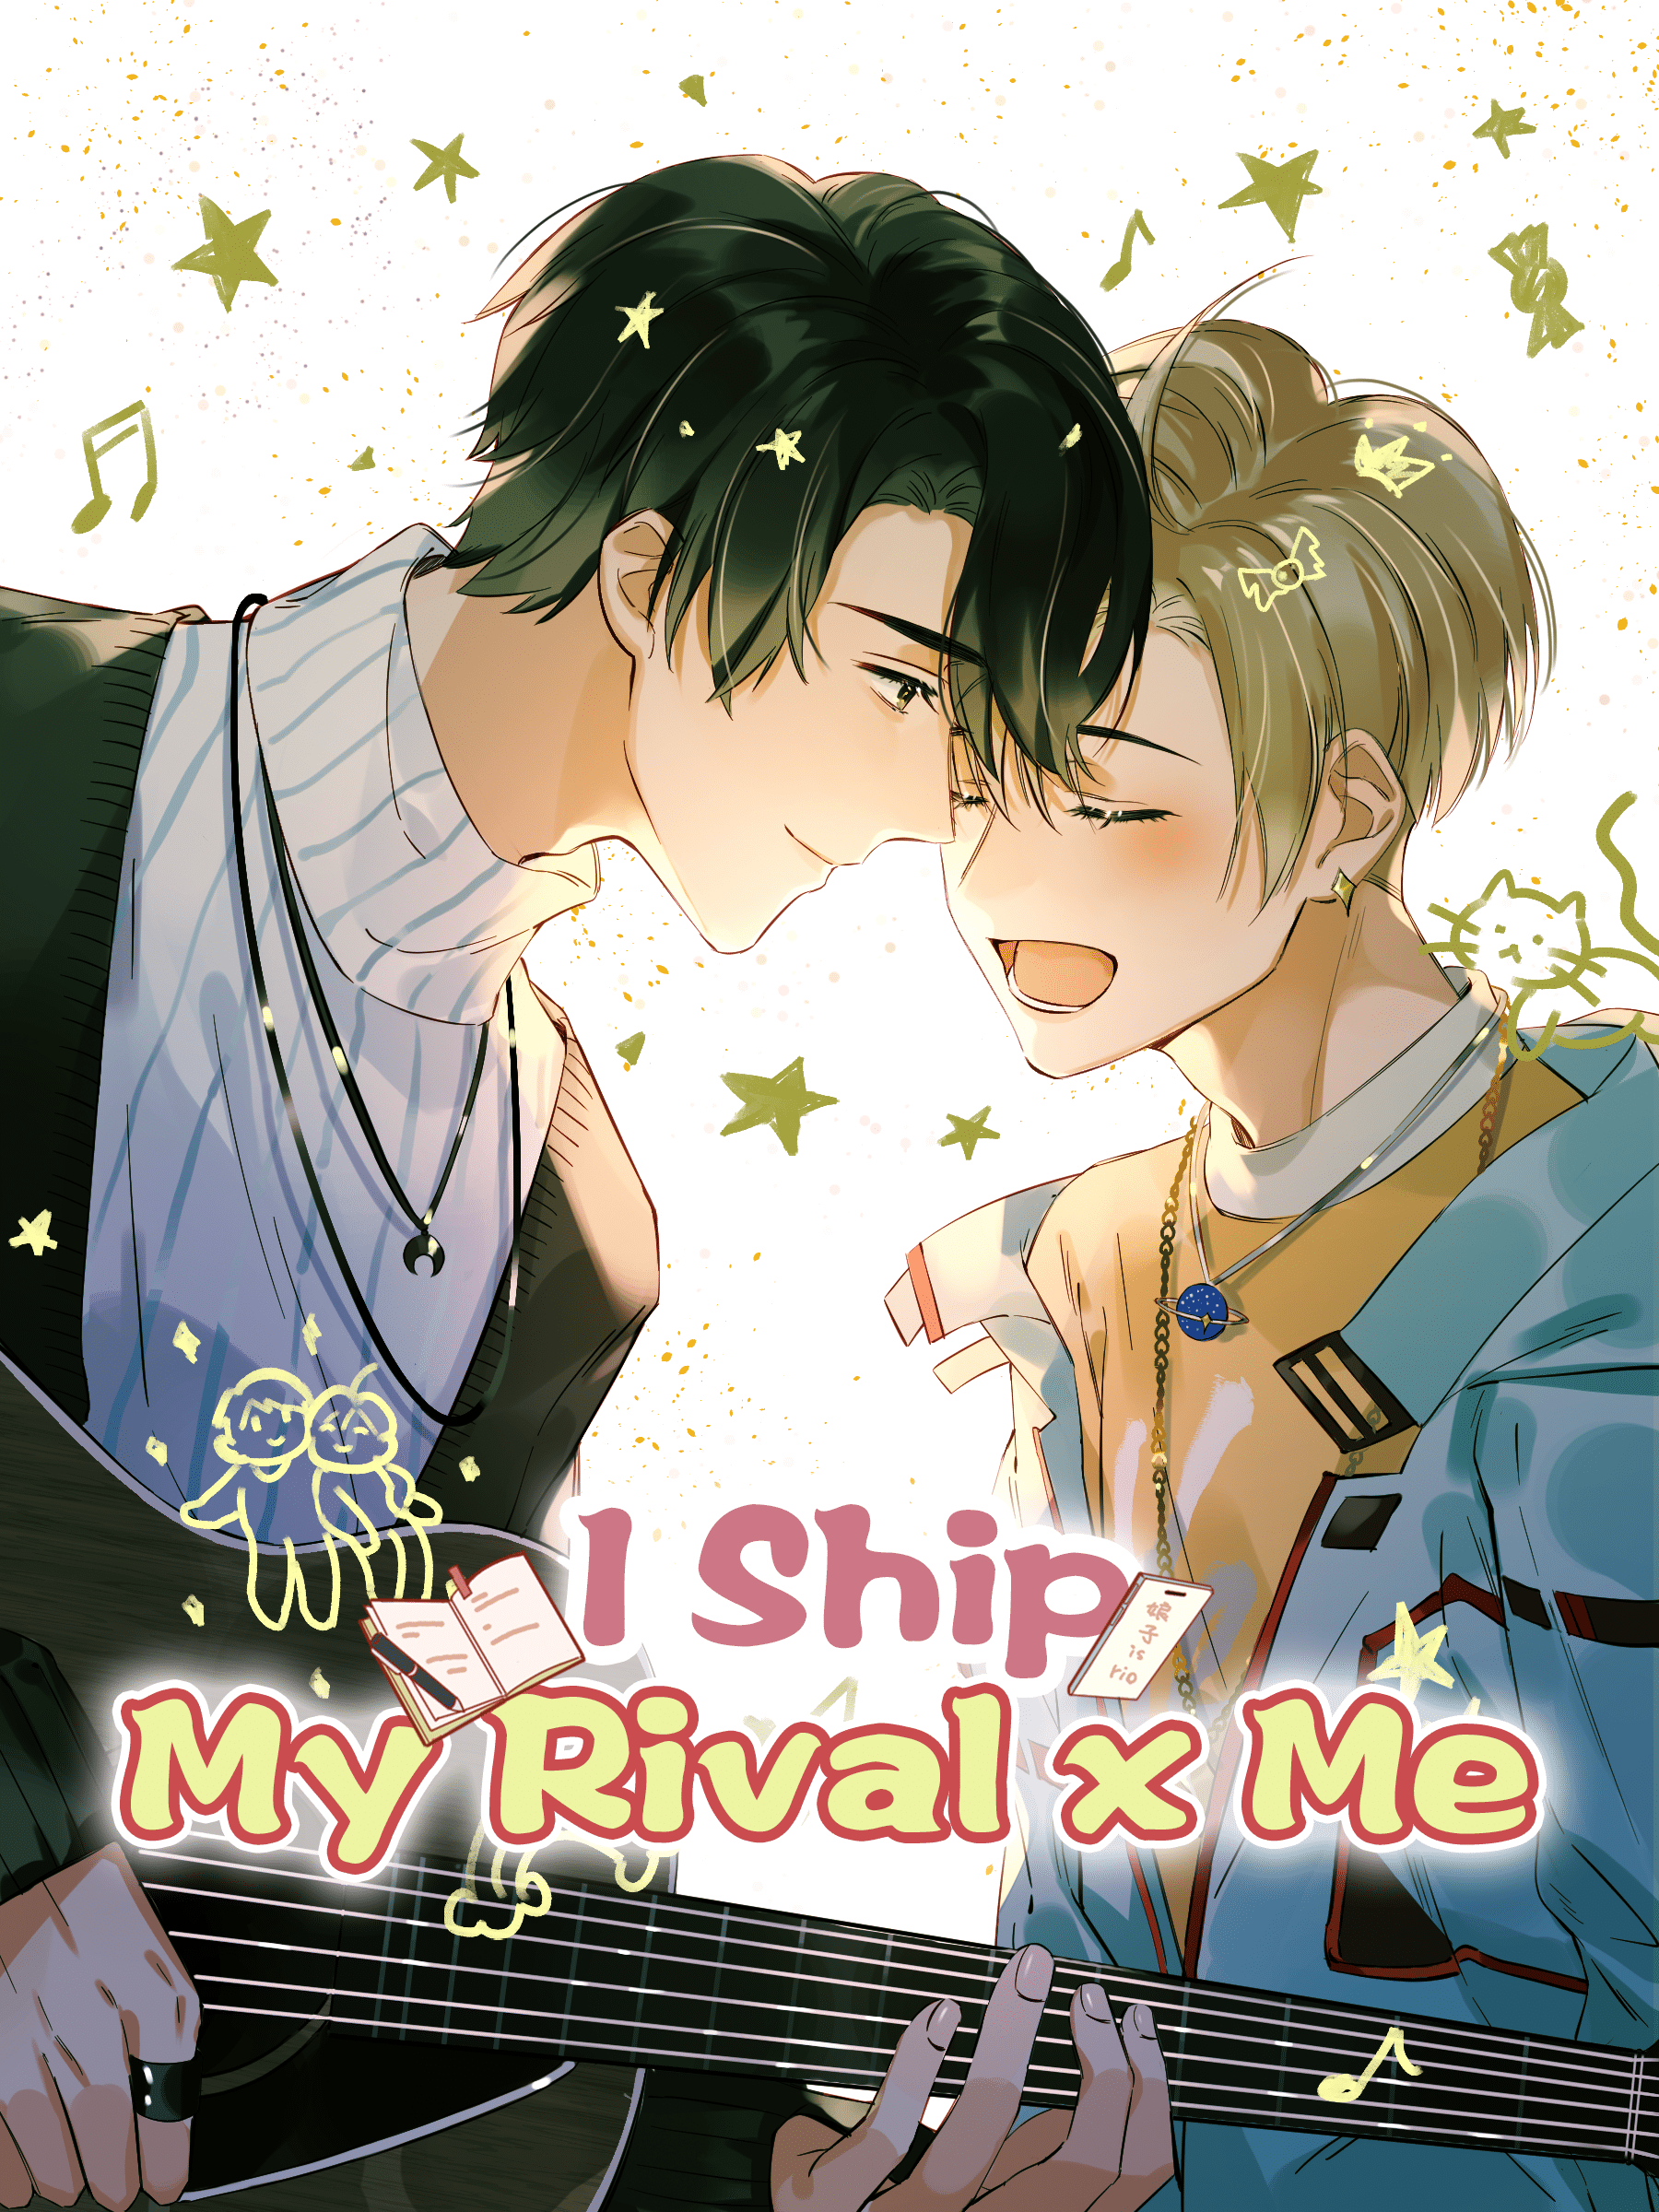 I Ship My Rival x Me – ปฏิบัติการเปลี่ยนคู่แข่งมาเป็นคู่จิ้น ตอนที่ 1